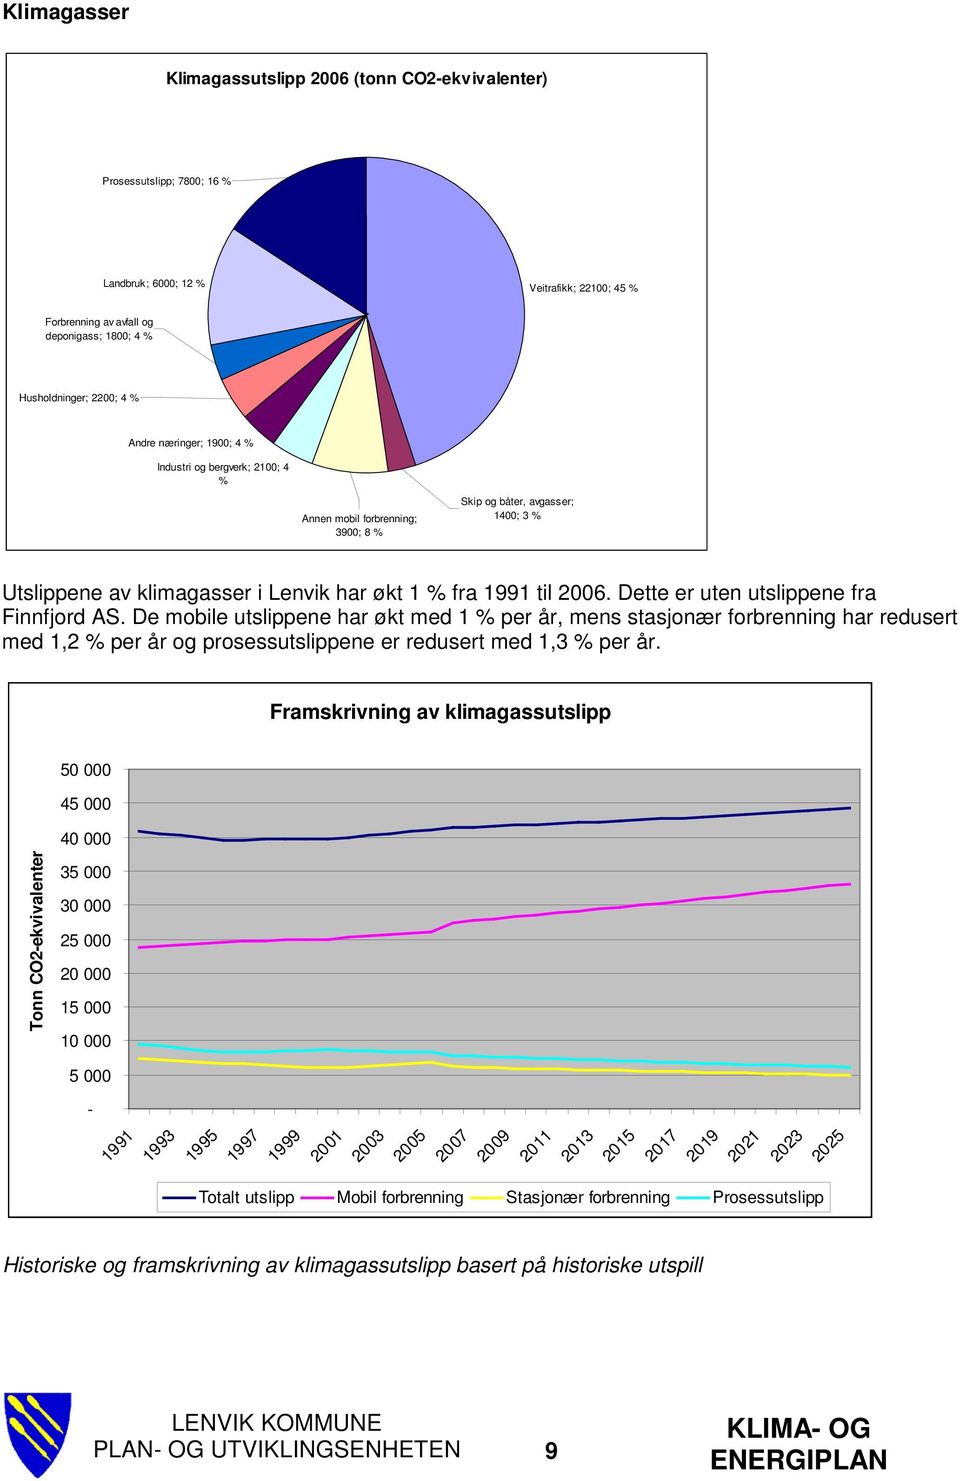 Dette er uten utslippene fra Finnfjord AS. De mobile utslippene har økt med 1 % per år, mens stasjonær forbrenning har redusert med 1,2 % per år og prosessutslippene er redusert med 1,3 % per år.